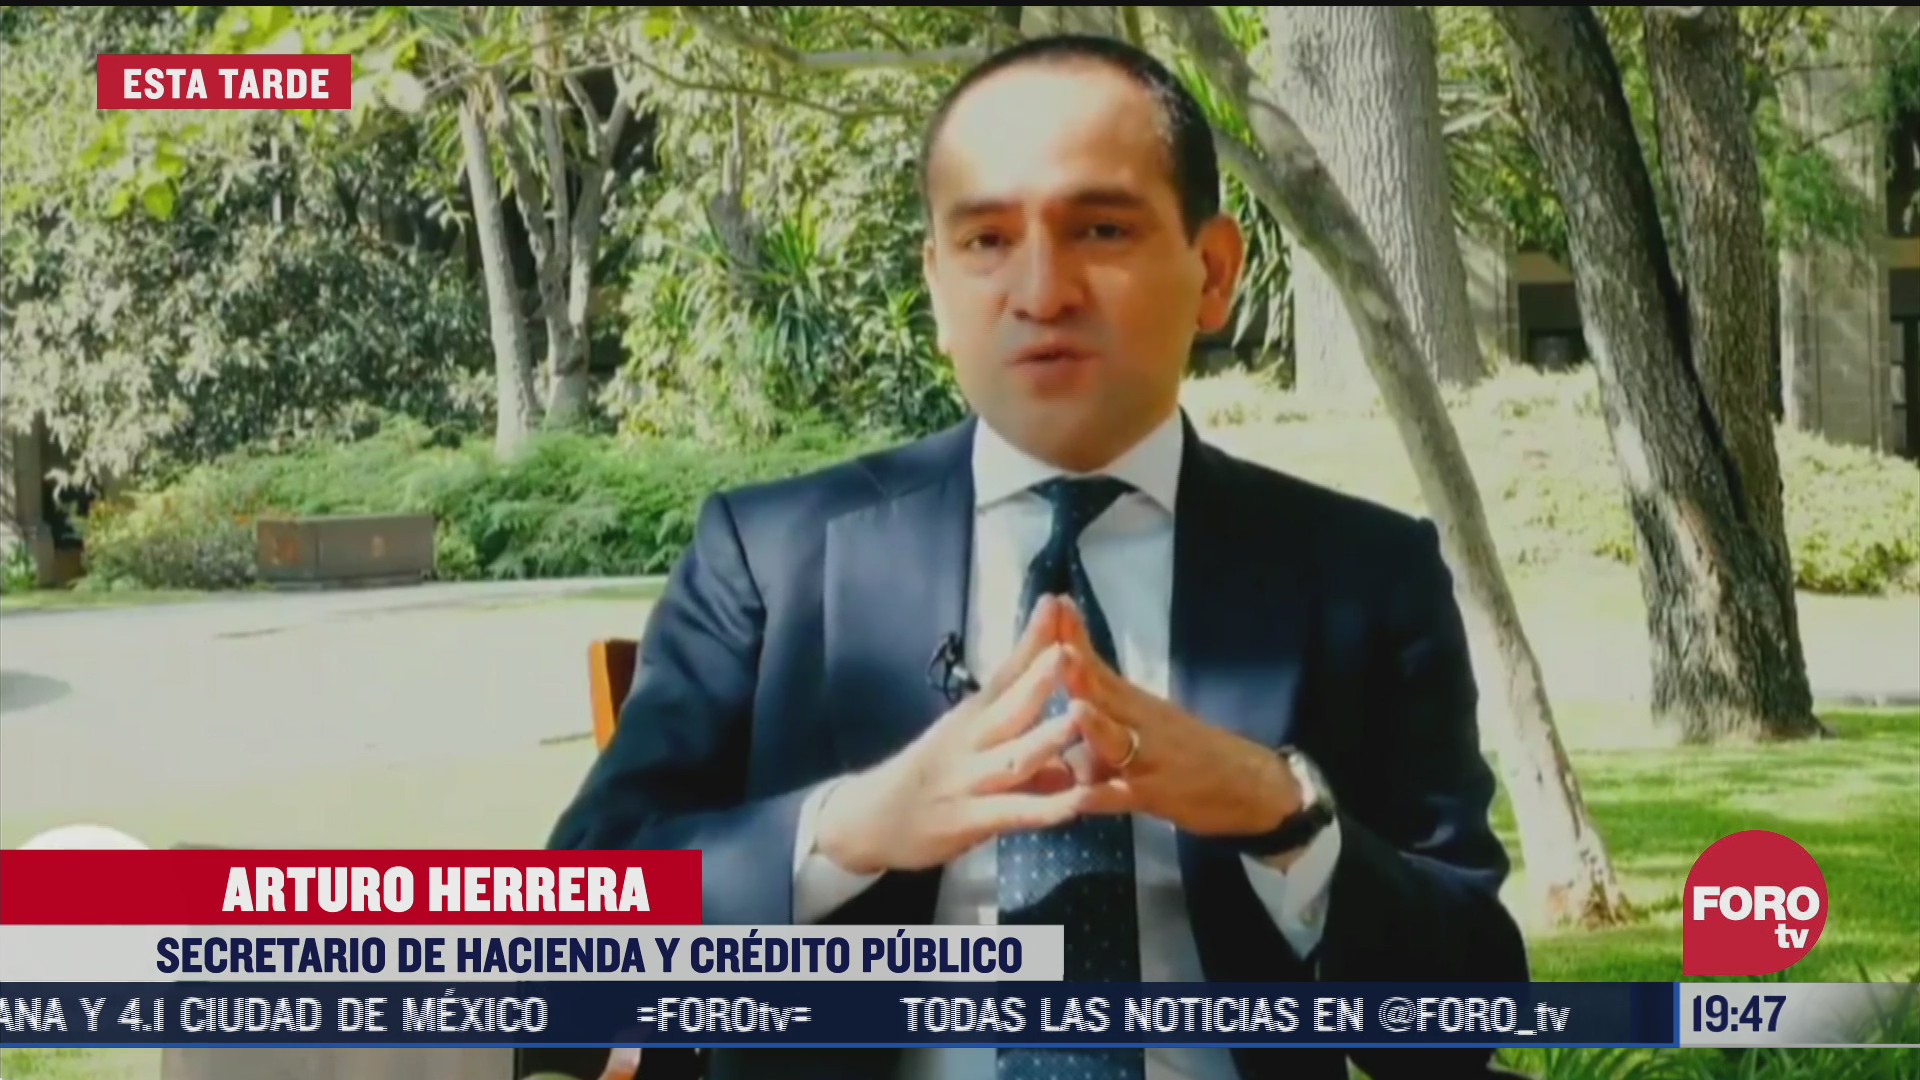 Arturo Herrera secretario de hacienda agradece apoyo de empresaios por nueva reforma a sistema de pensiones en México